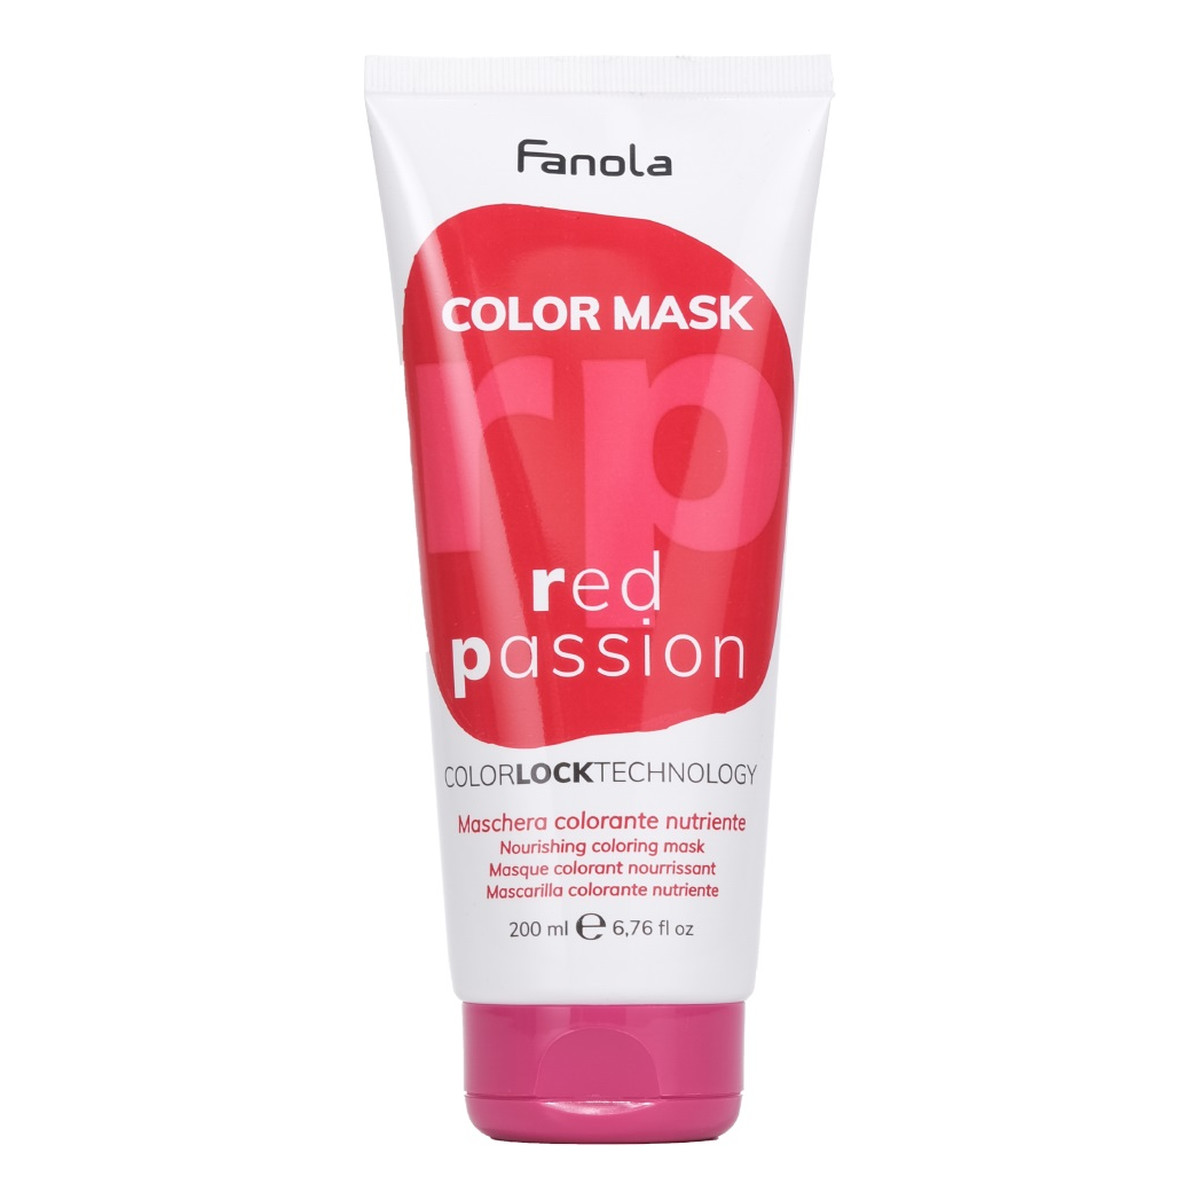 Fanola Color mask maska koloryzująca do włosów red passion 200ml